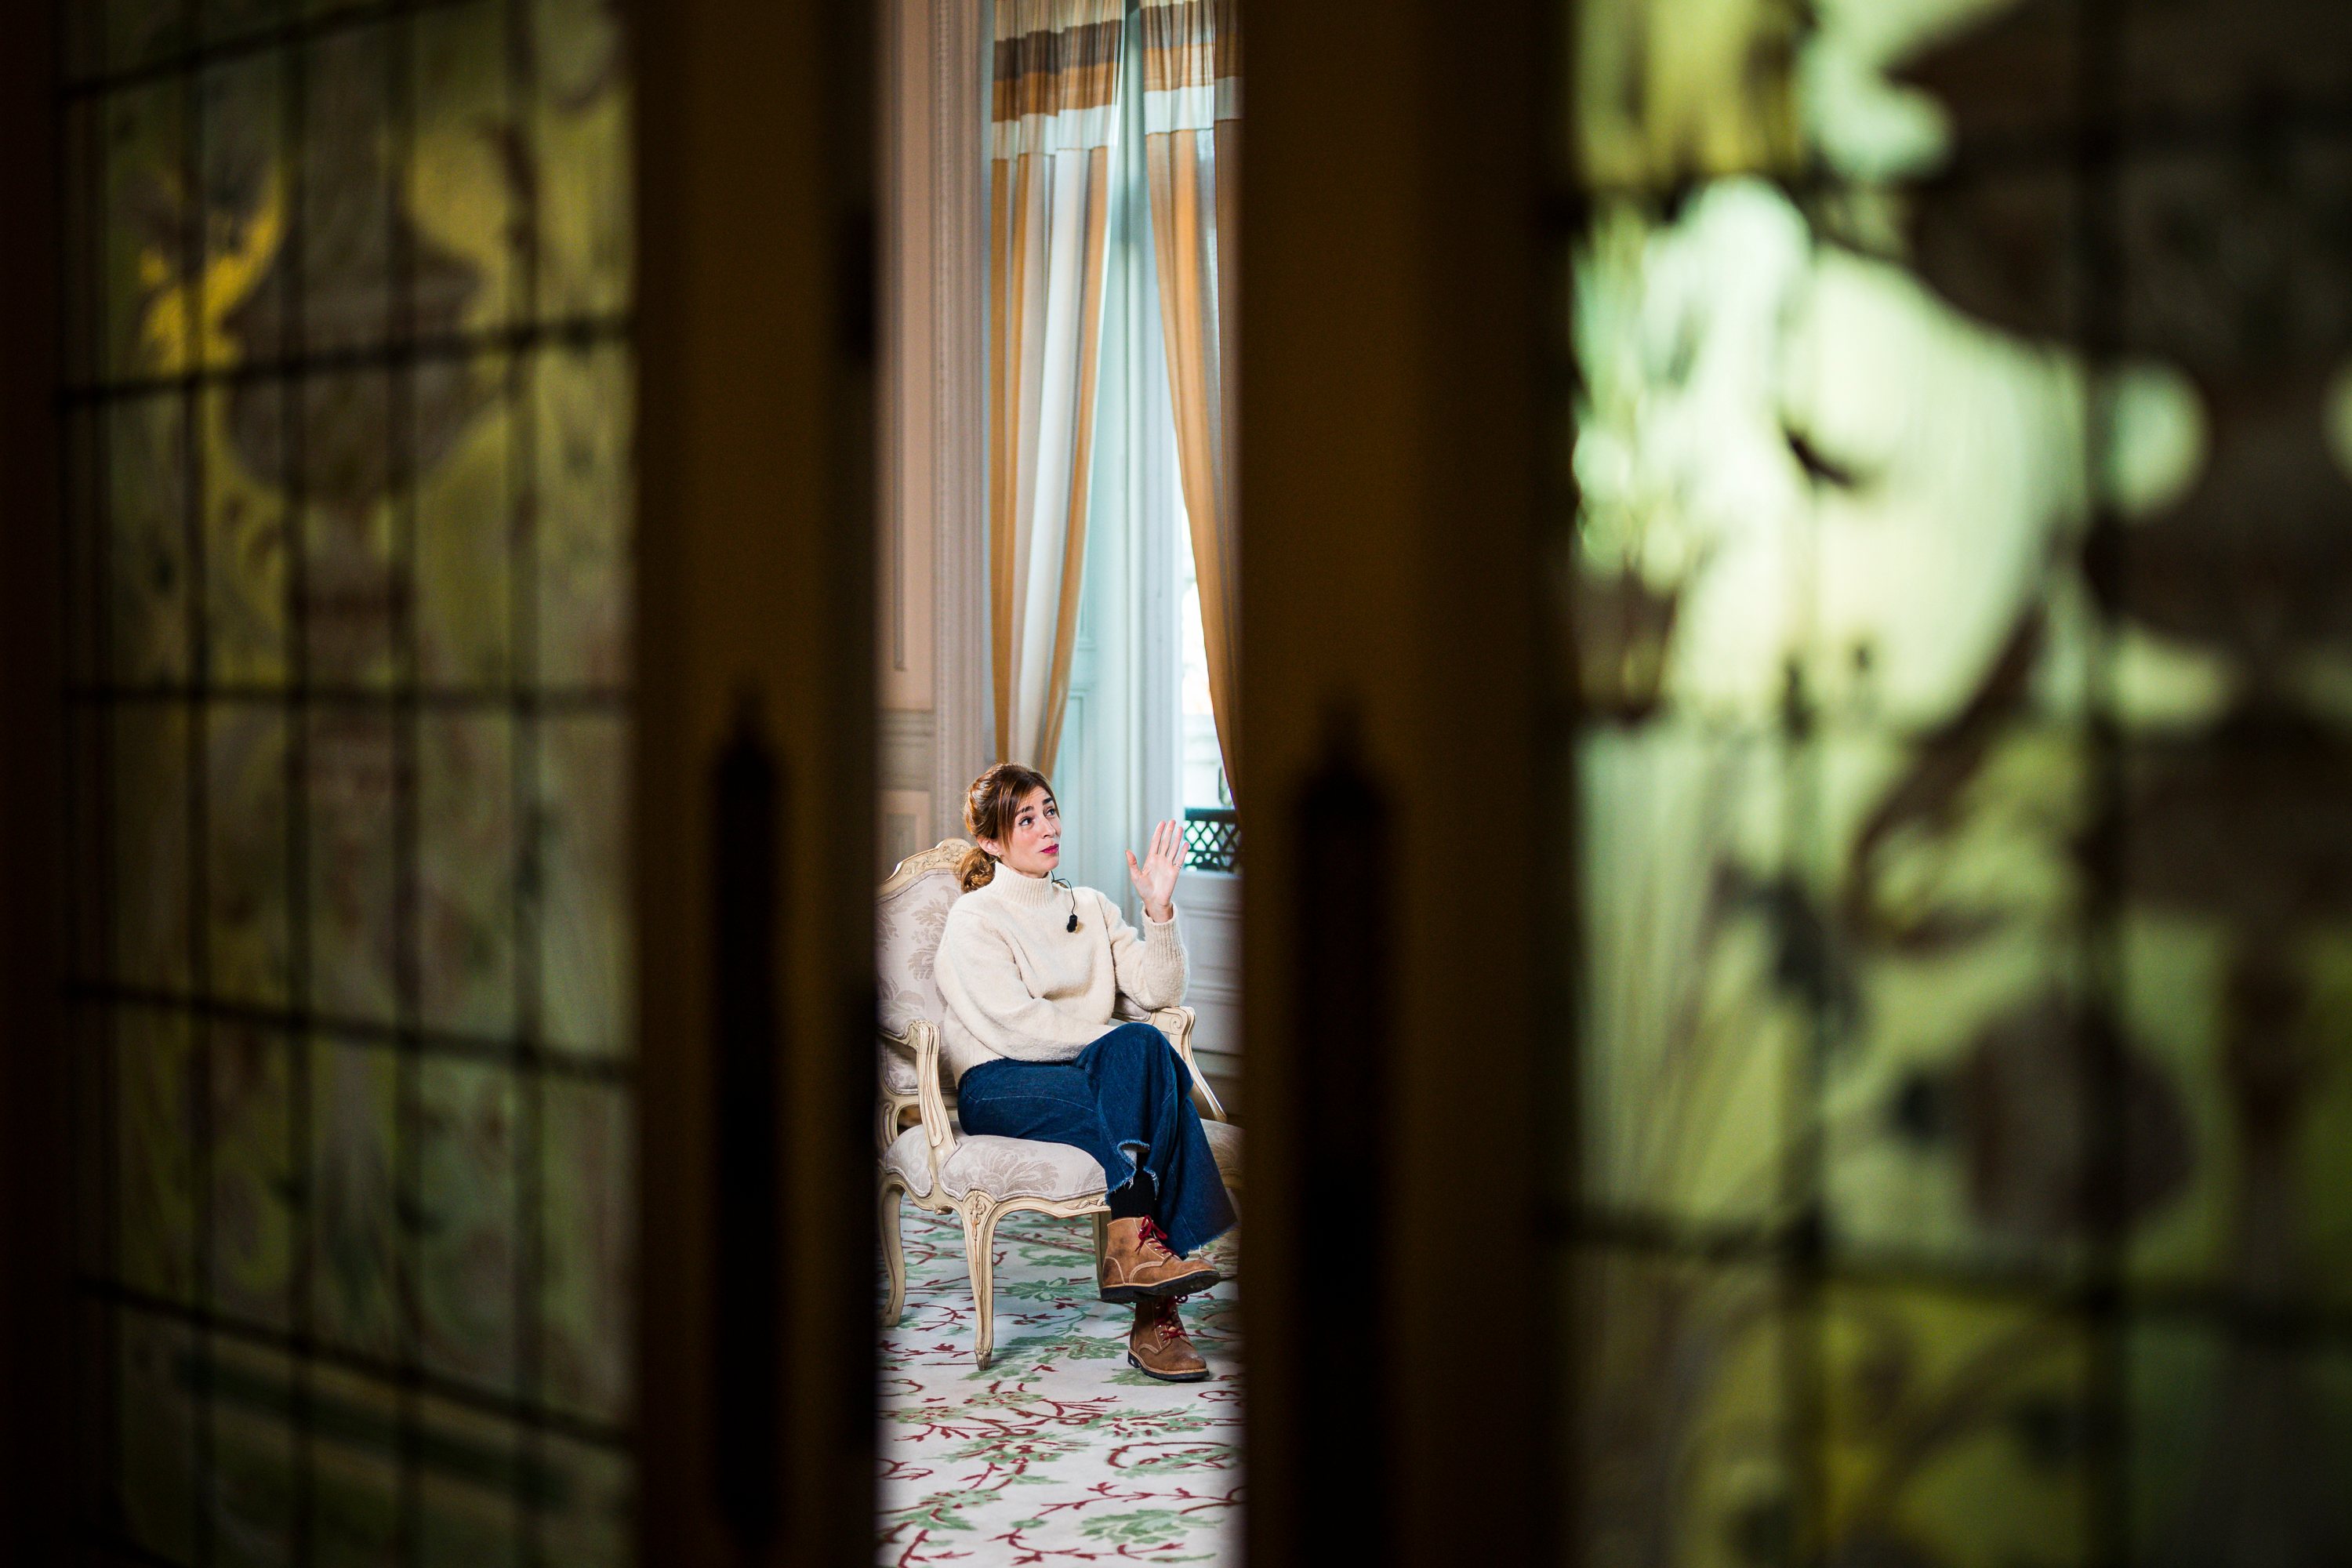 Entrevista com Rita Redshoes, a propósito do tema da saúde mental (depressão pós-parto), no hotel Pestana Palace. Lisboa, 02 de Dezembro de 2021. FILIPE AMORIM/OBSERVADOR